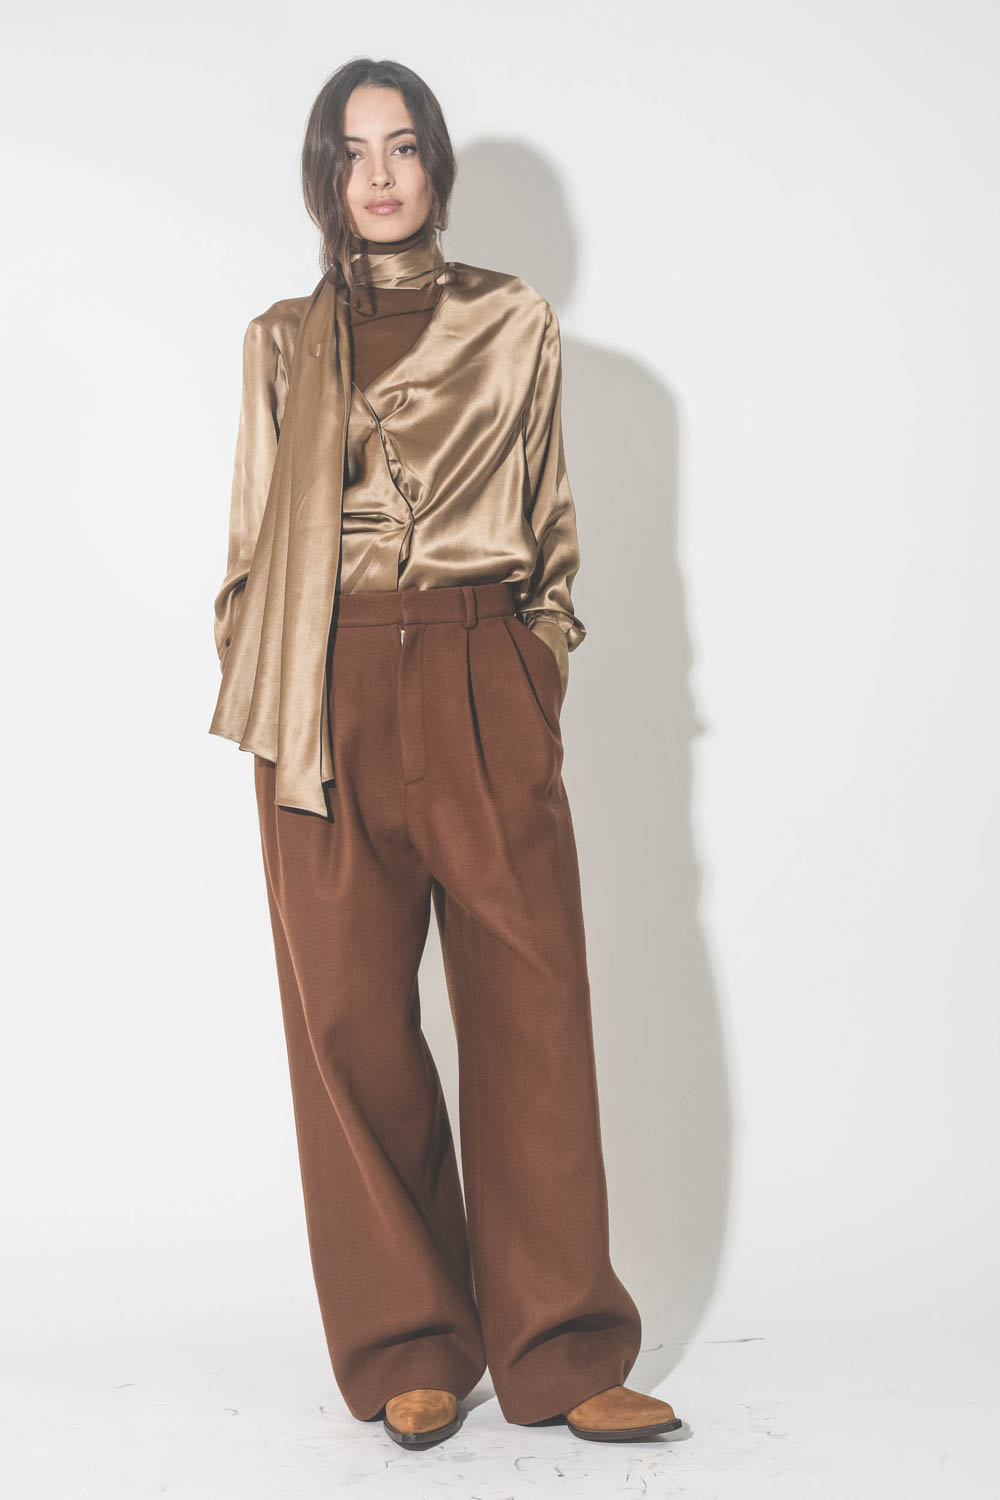 Pantalon large à pinces en drap de laine marron Vautrait. Porté avec une blouse en soie camel dorée.